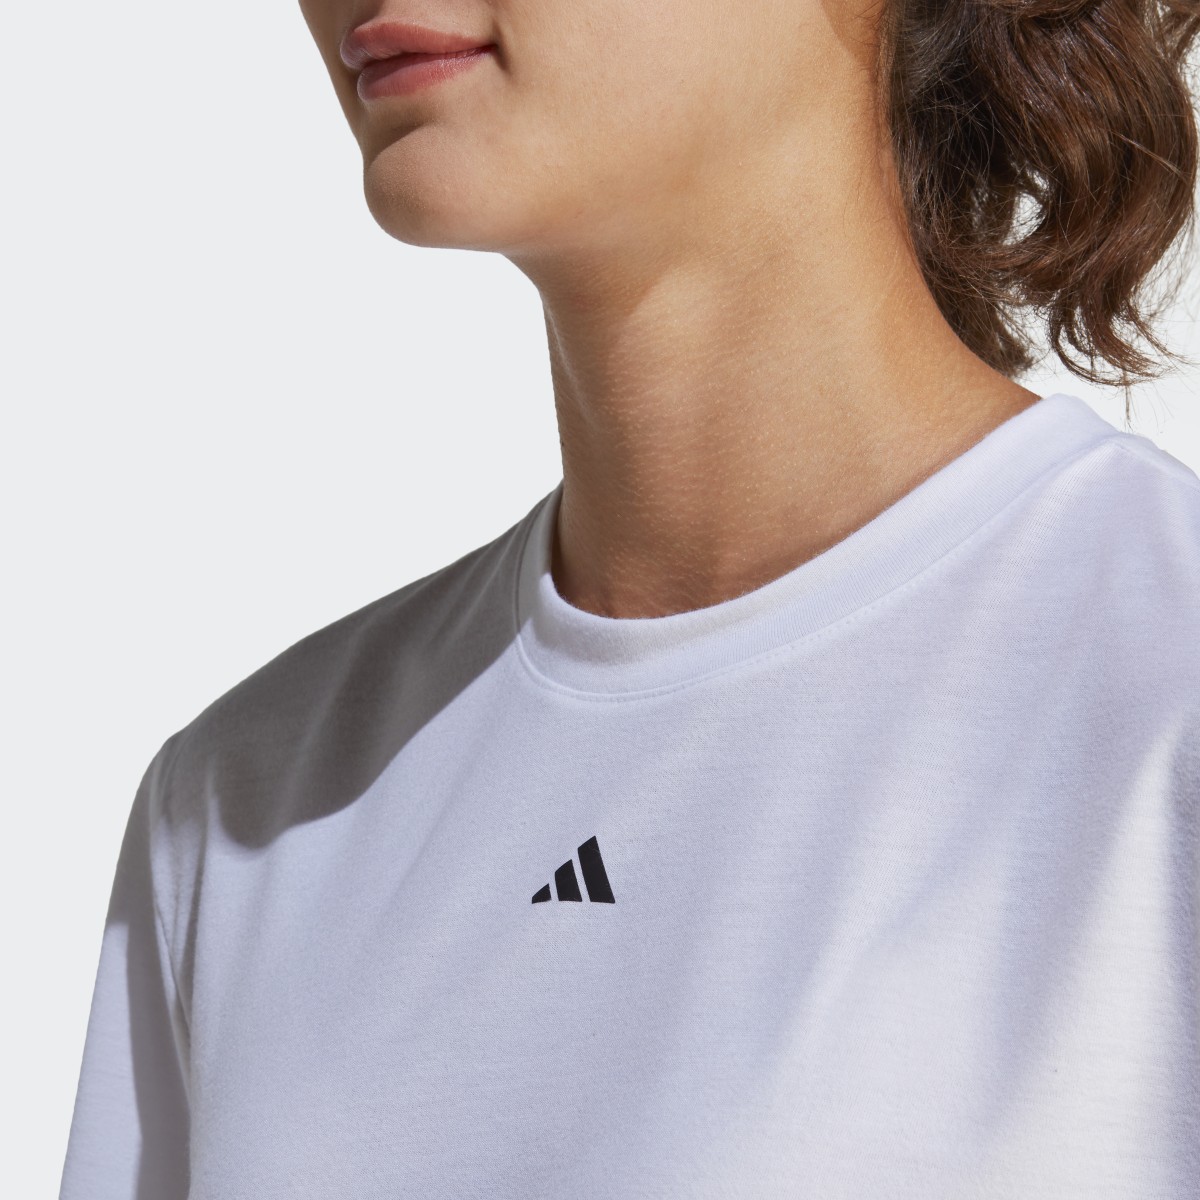 Adidas Studio T-Shirt. 6